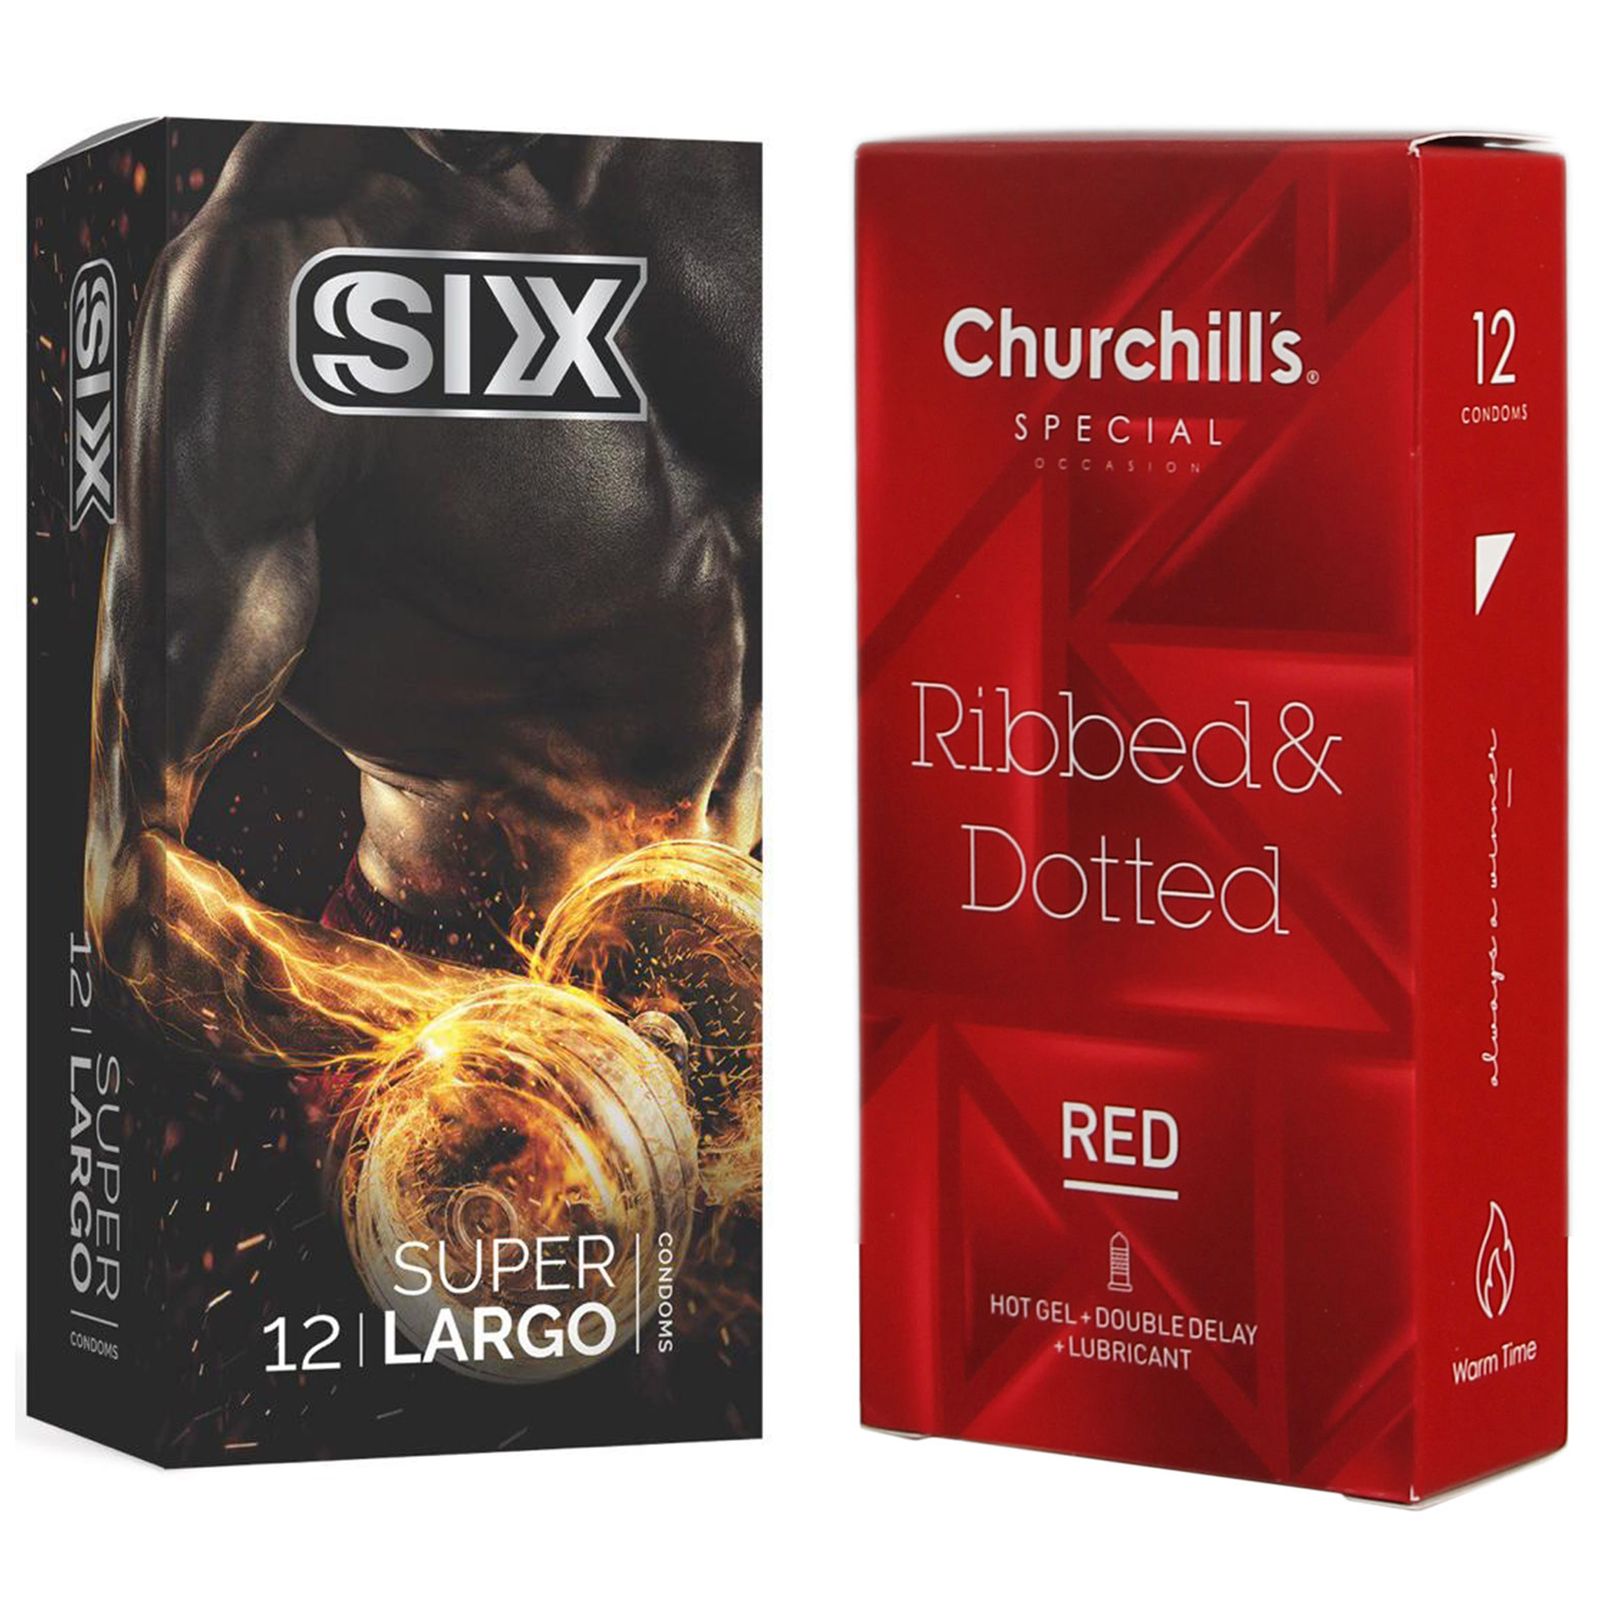 کاندوم چرچیلز مدل Hot Gel بسته 12 عددی به همراه کاندوم سیکس مدل سفت کننده و بزرگ کننده بسته 12 عددی -  - 2